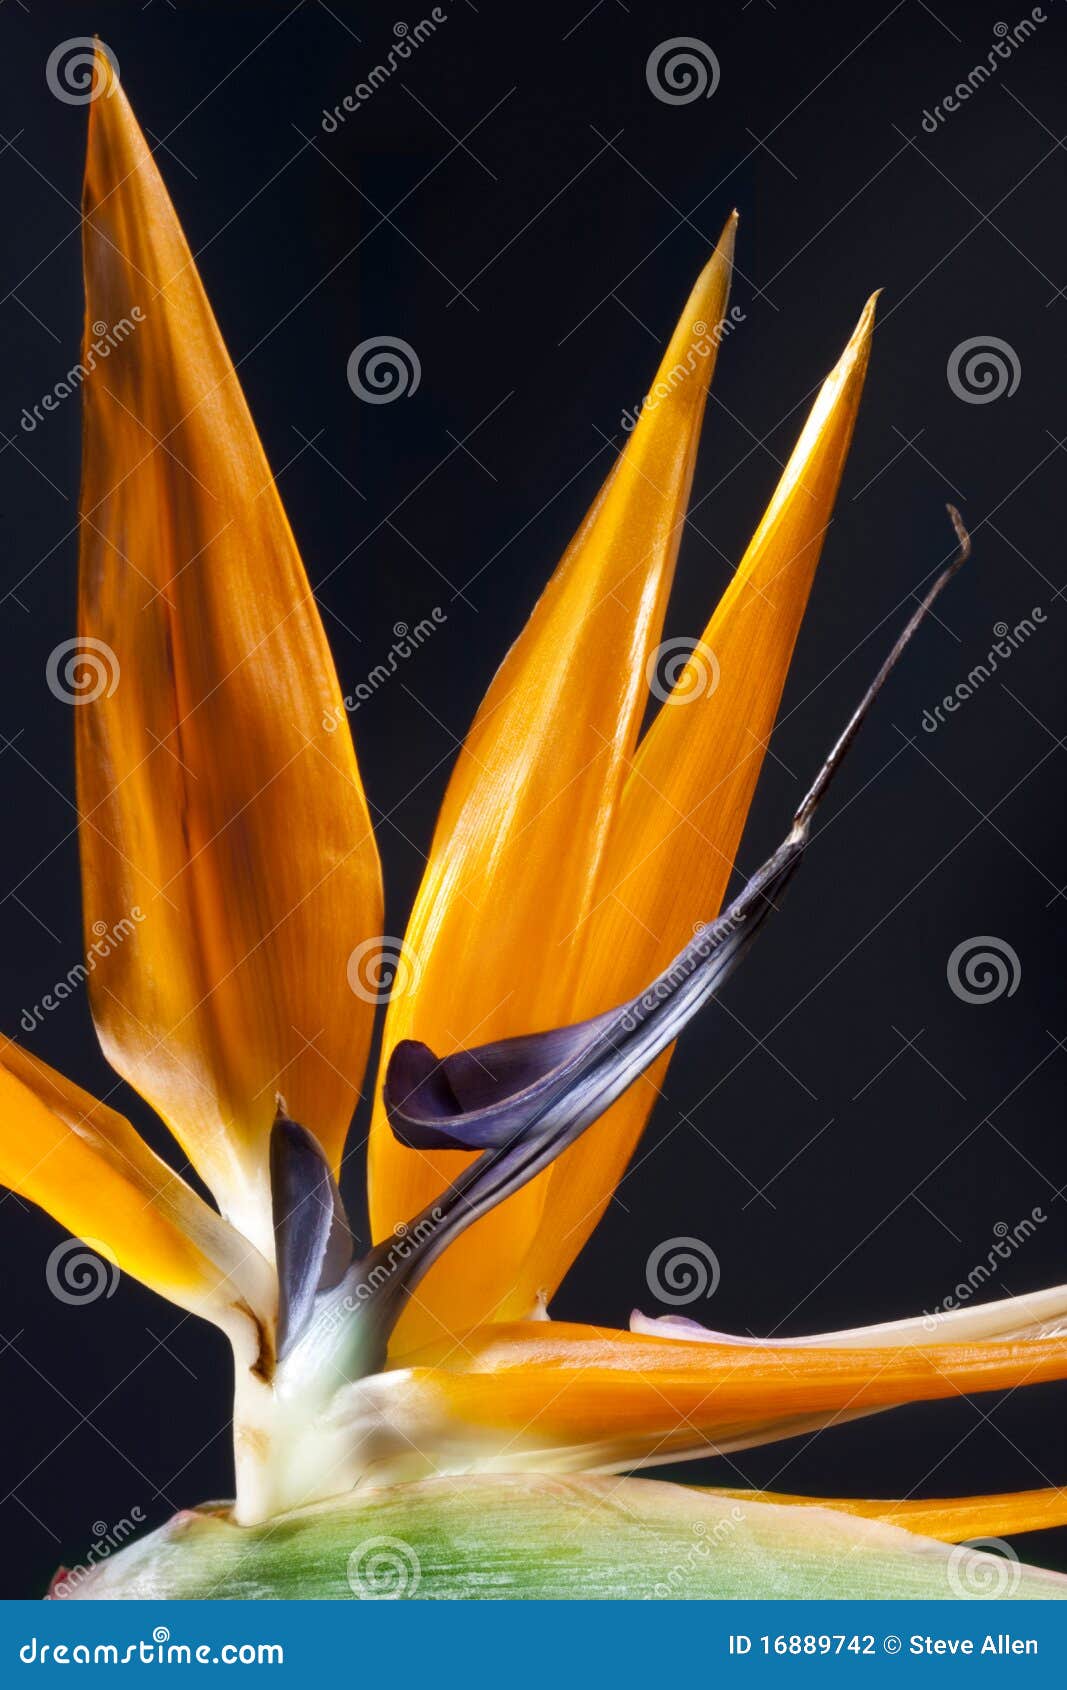 L'uccello del fiore di paradiso è una pianta africana del sud relativa alla banana. Sopporta un fiore irregolare con una linguetta proiettante lunga. Genere Strelitzia, Strelitziaceae della famiglia.